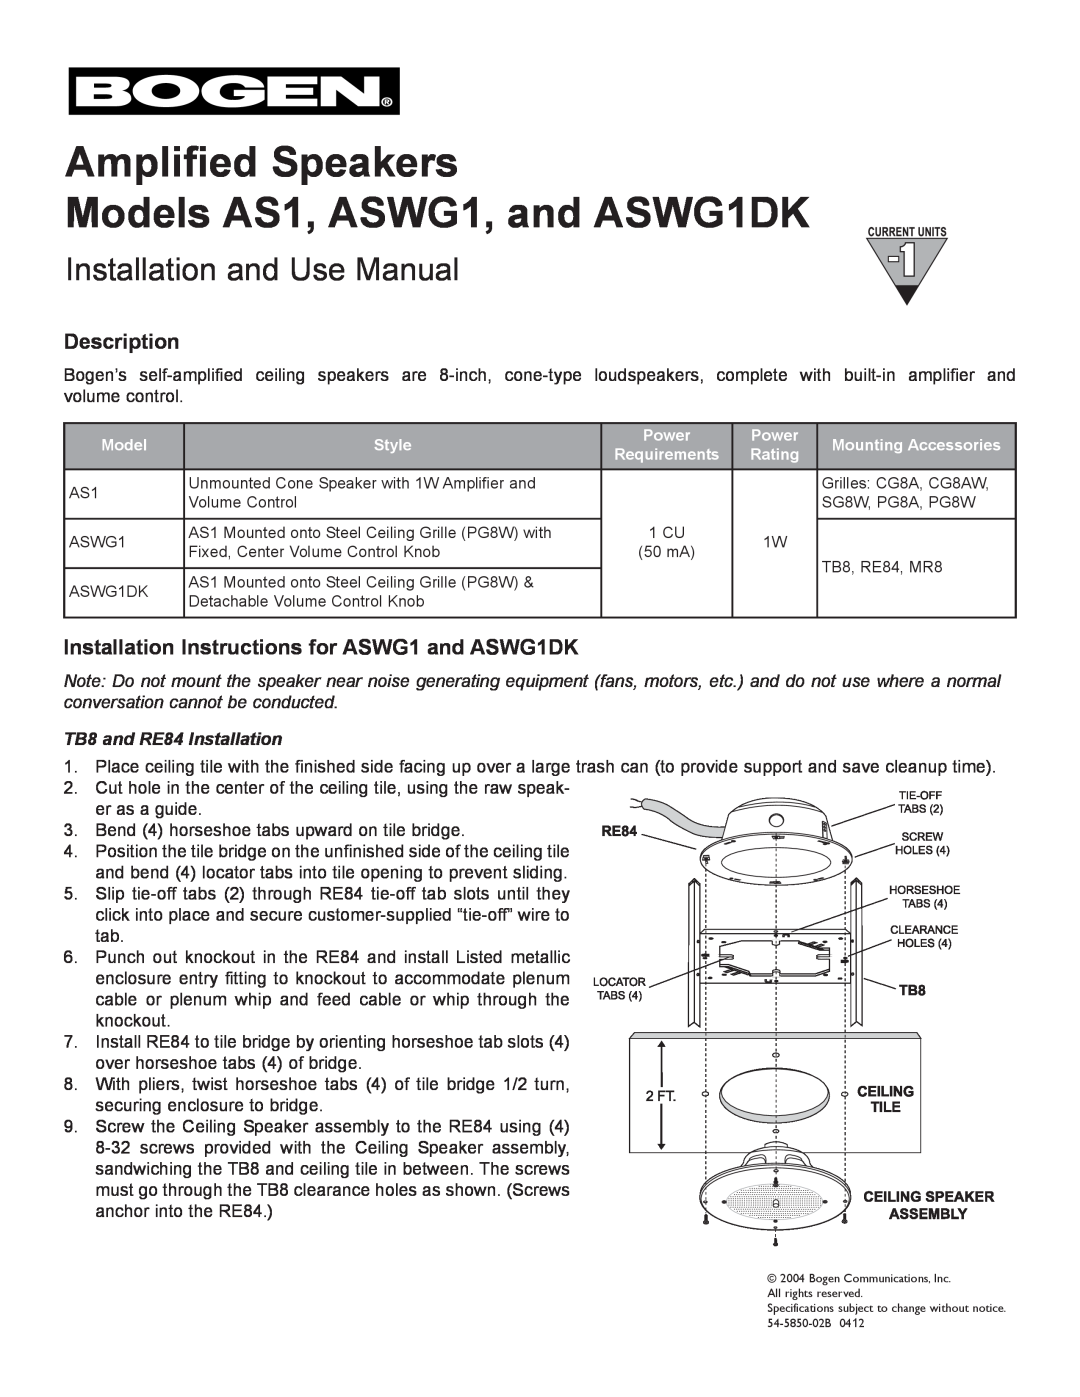 Bogen AS1 installation instructions Description, Installation Instructions for ASWG1 and ASWG1DK 